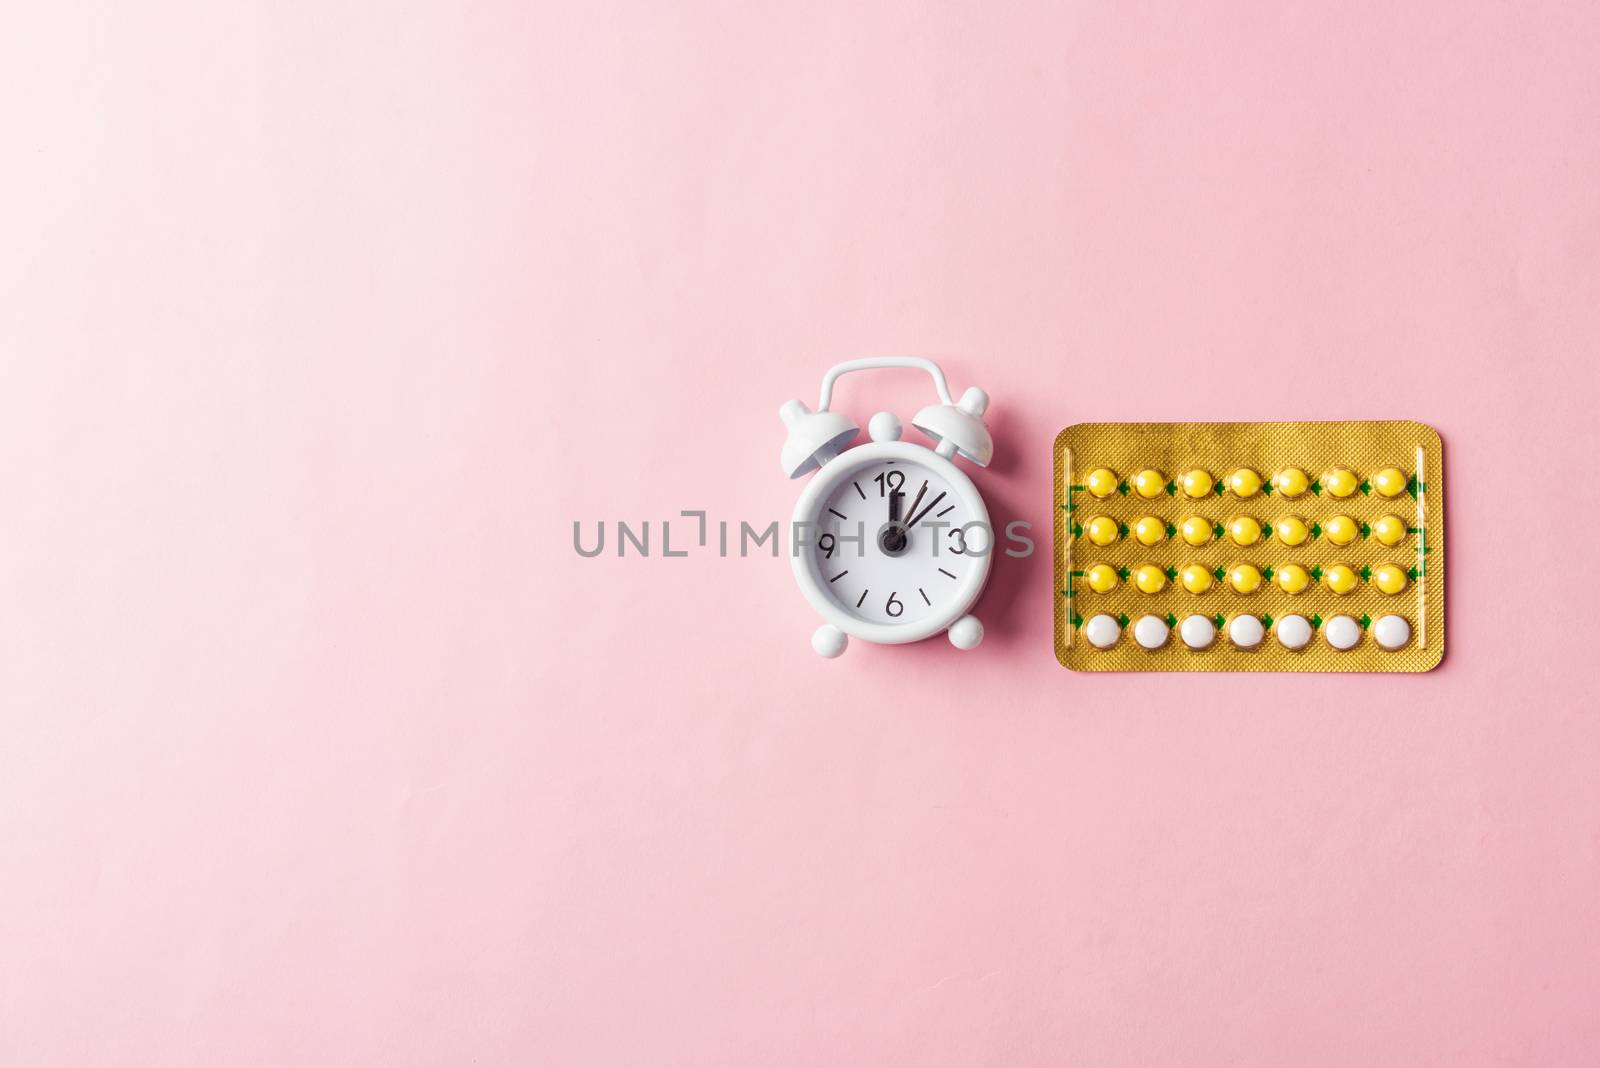 medicine birth control, alarm clock and contraceptive pills by Sorapop